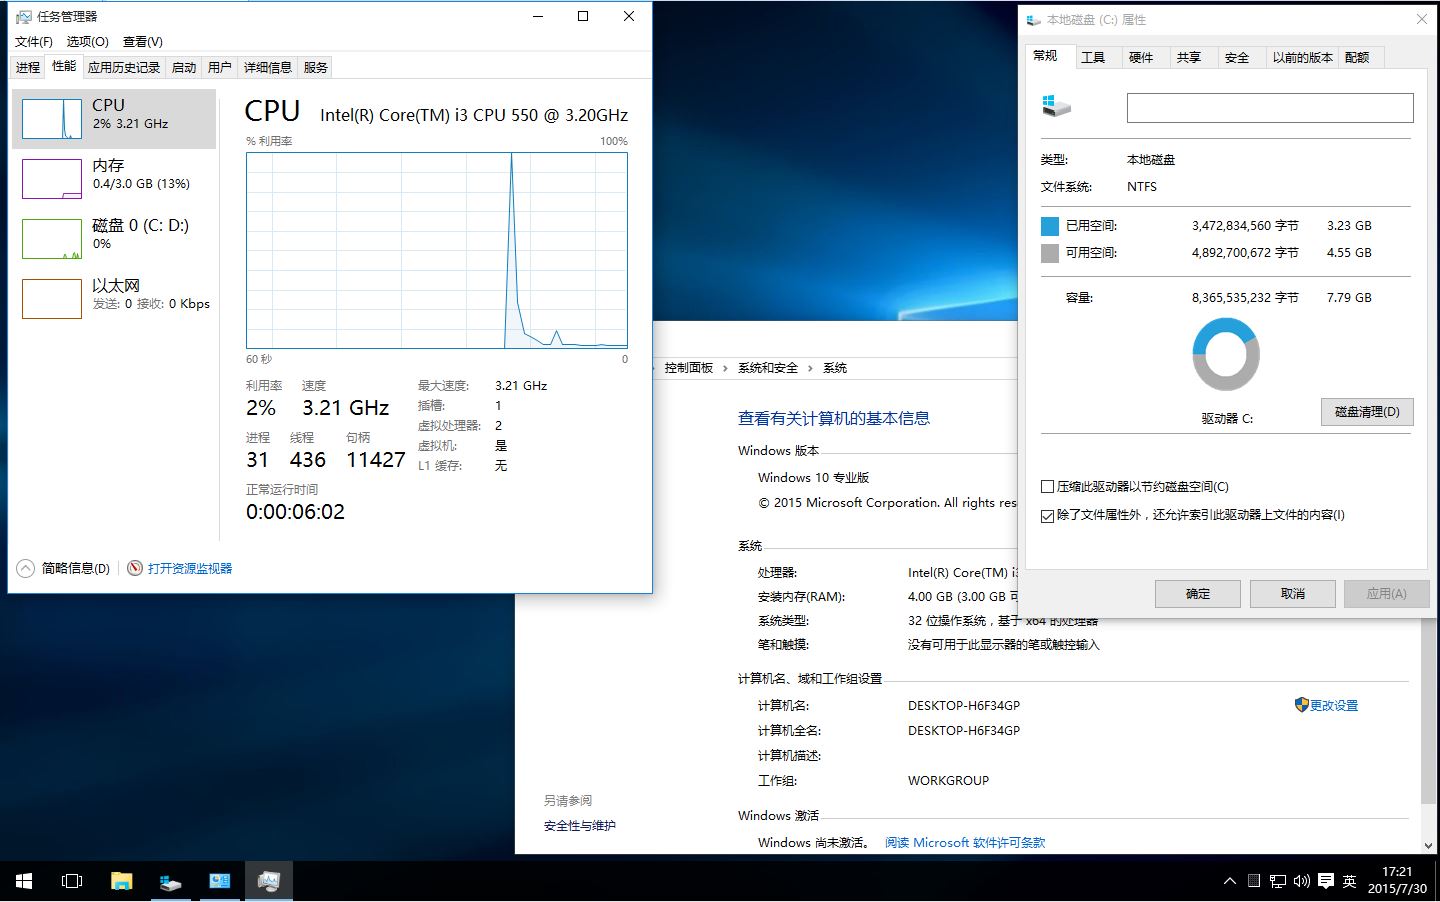 Windows 10 RTM 10240